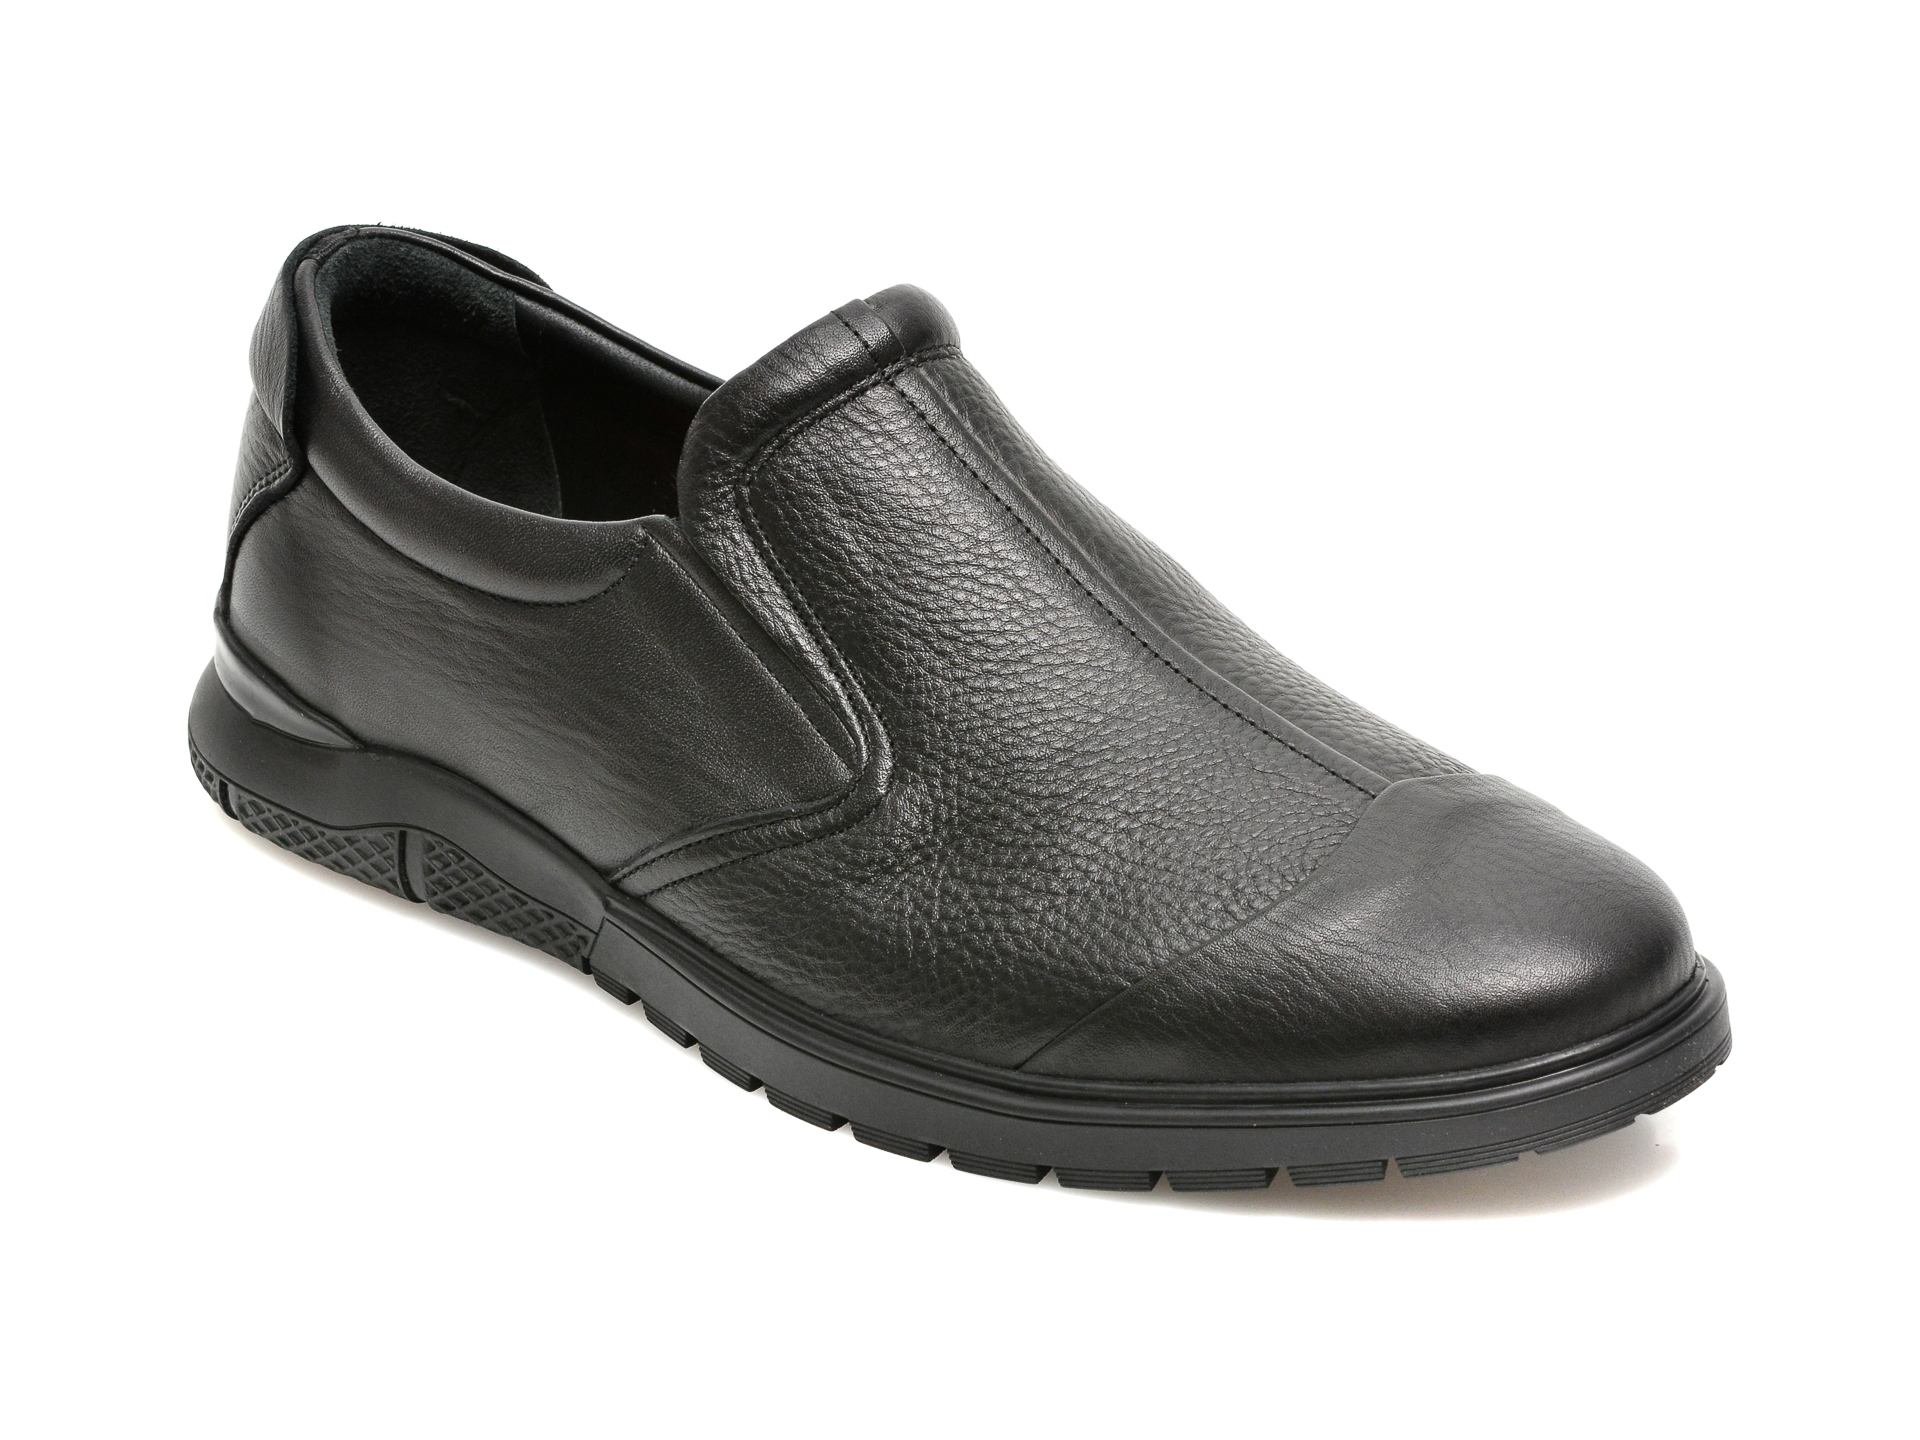 Pantofi OTTER negri, 559, din piele naturala Otter poza reduceri 2021